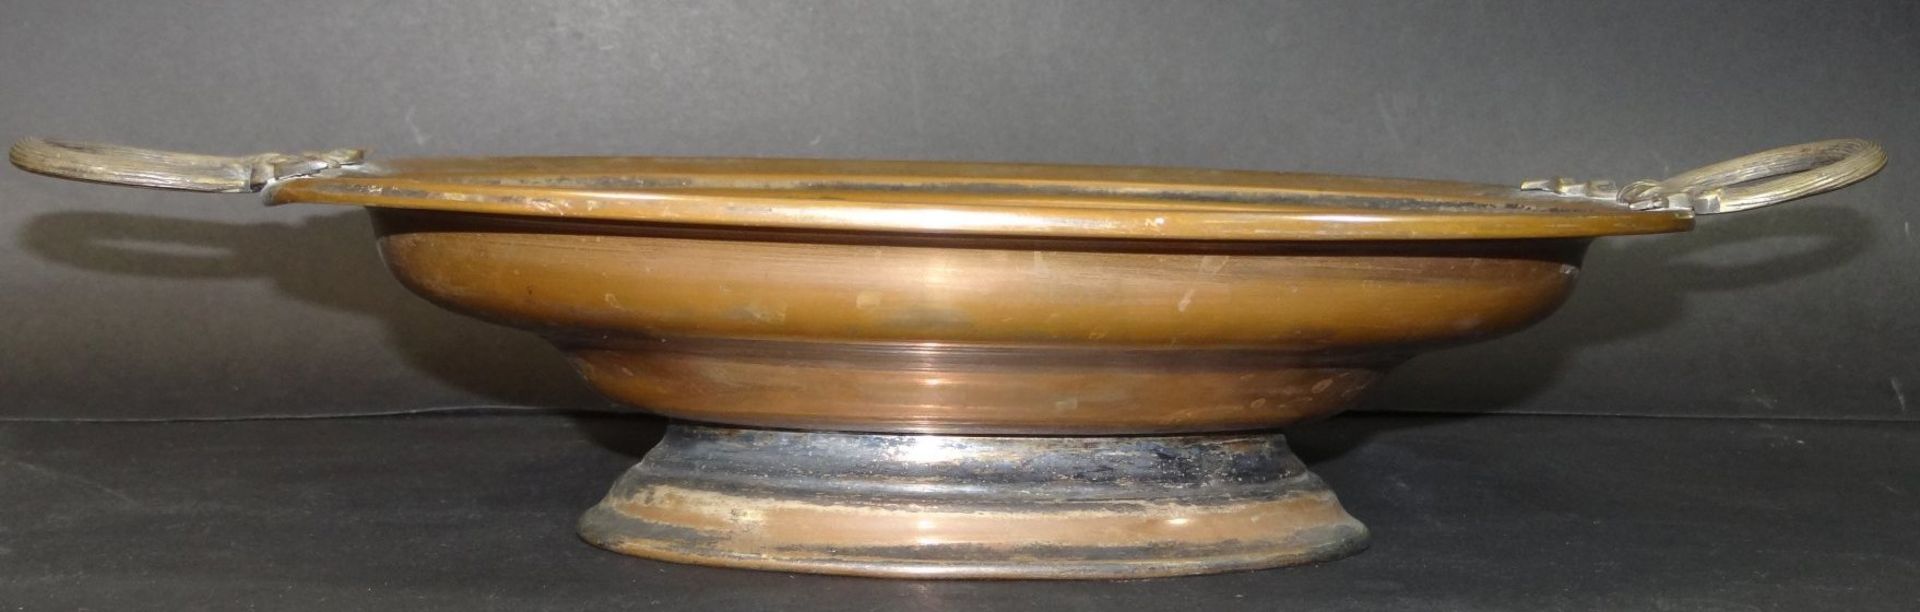 ovale Kupfer-Henkelschale auf Stand, H-8 cm, 29x22 cm- - -22.61 % buyer's premium on the hammer - Bild 2 aus 4